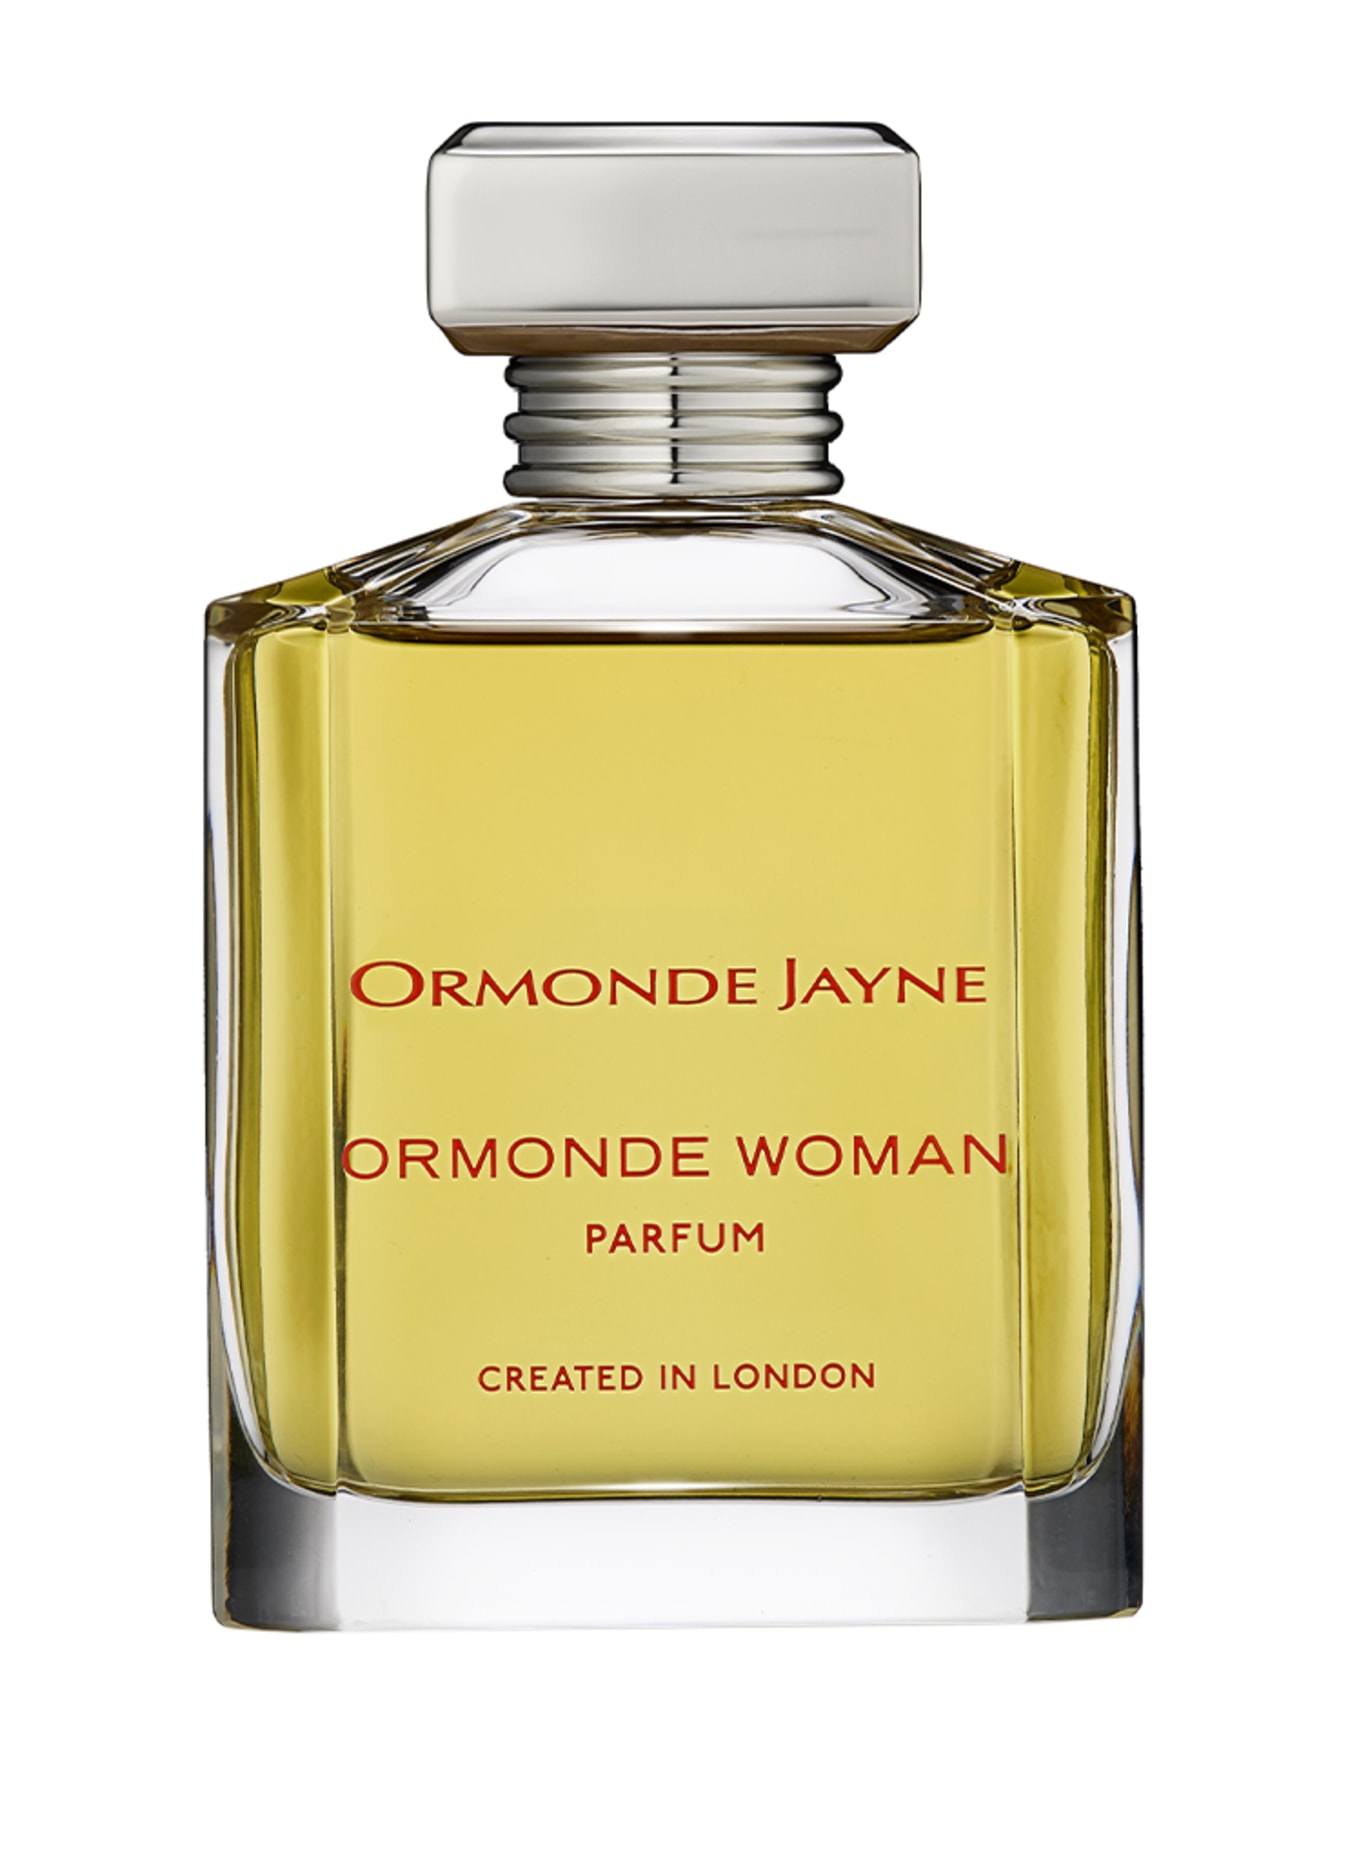 ORMONDE JAYNE ORMONDE WOMAN (Obrázek 1)